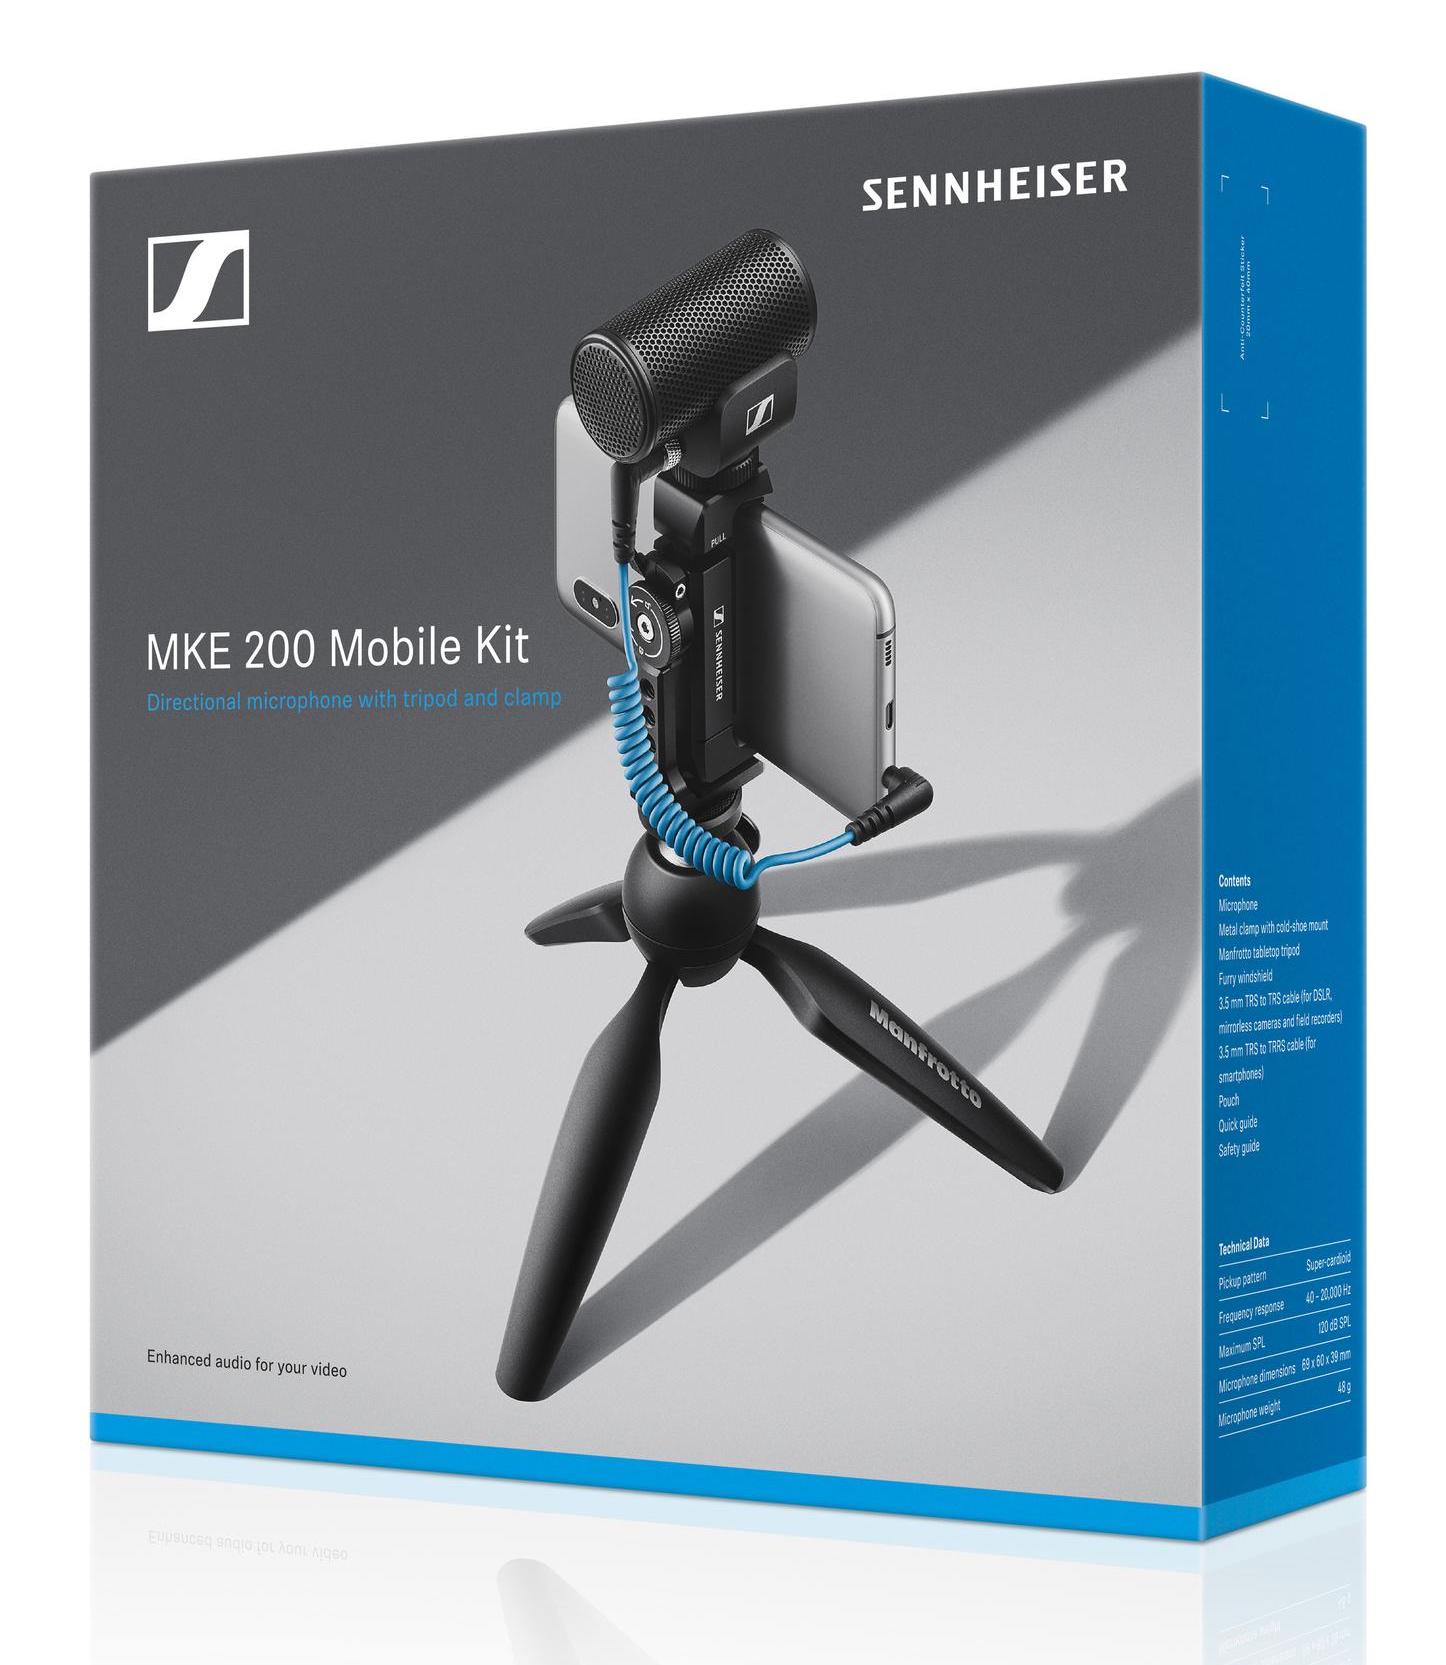 Sennheiser Mke 200 Mobile Kit - Micro USB & smartphone - Variation 2